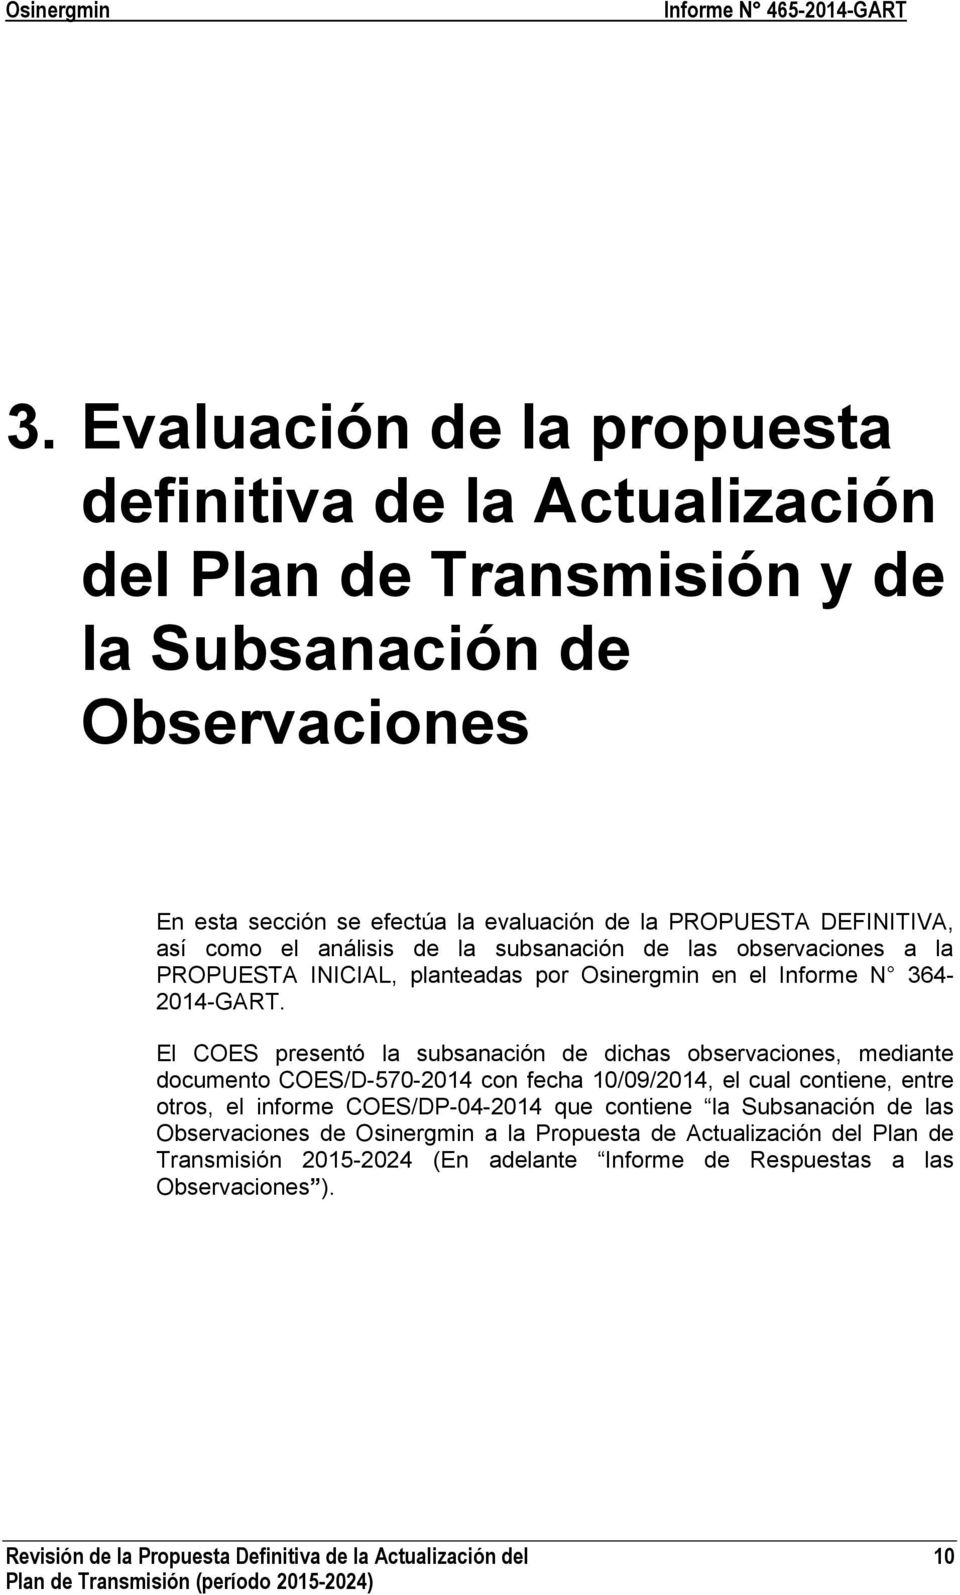 El COES presentó la subsanación de dichas observaciones, mediante documento COES/D-570-2014 con fecha 10/09/2014, el cual contiene, entre otros, el informe COES/DP-04-2014 que contiene la